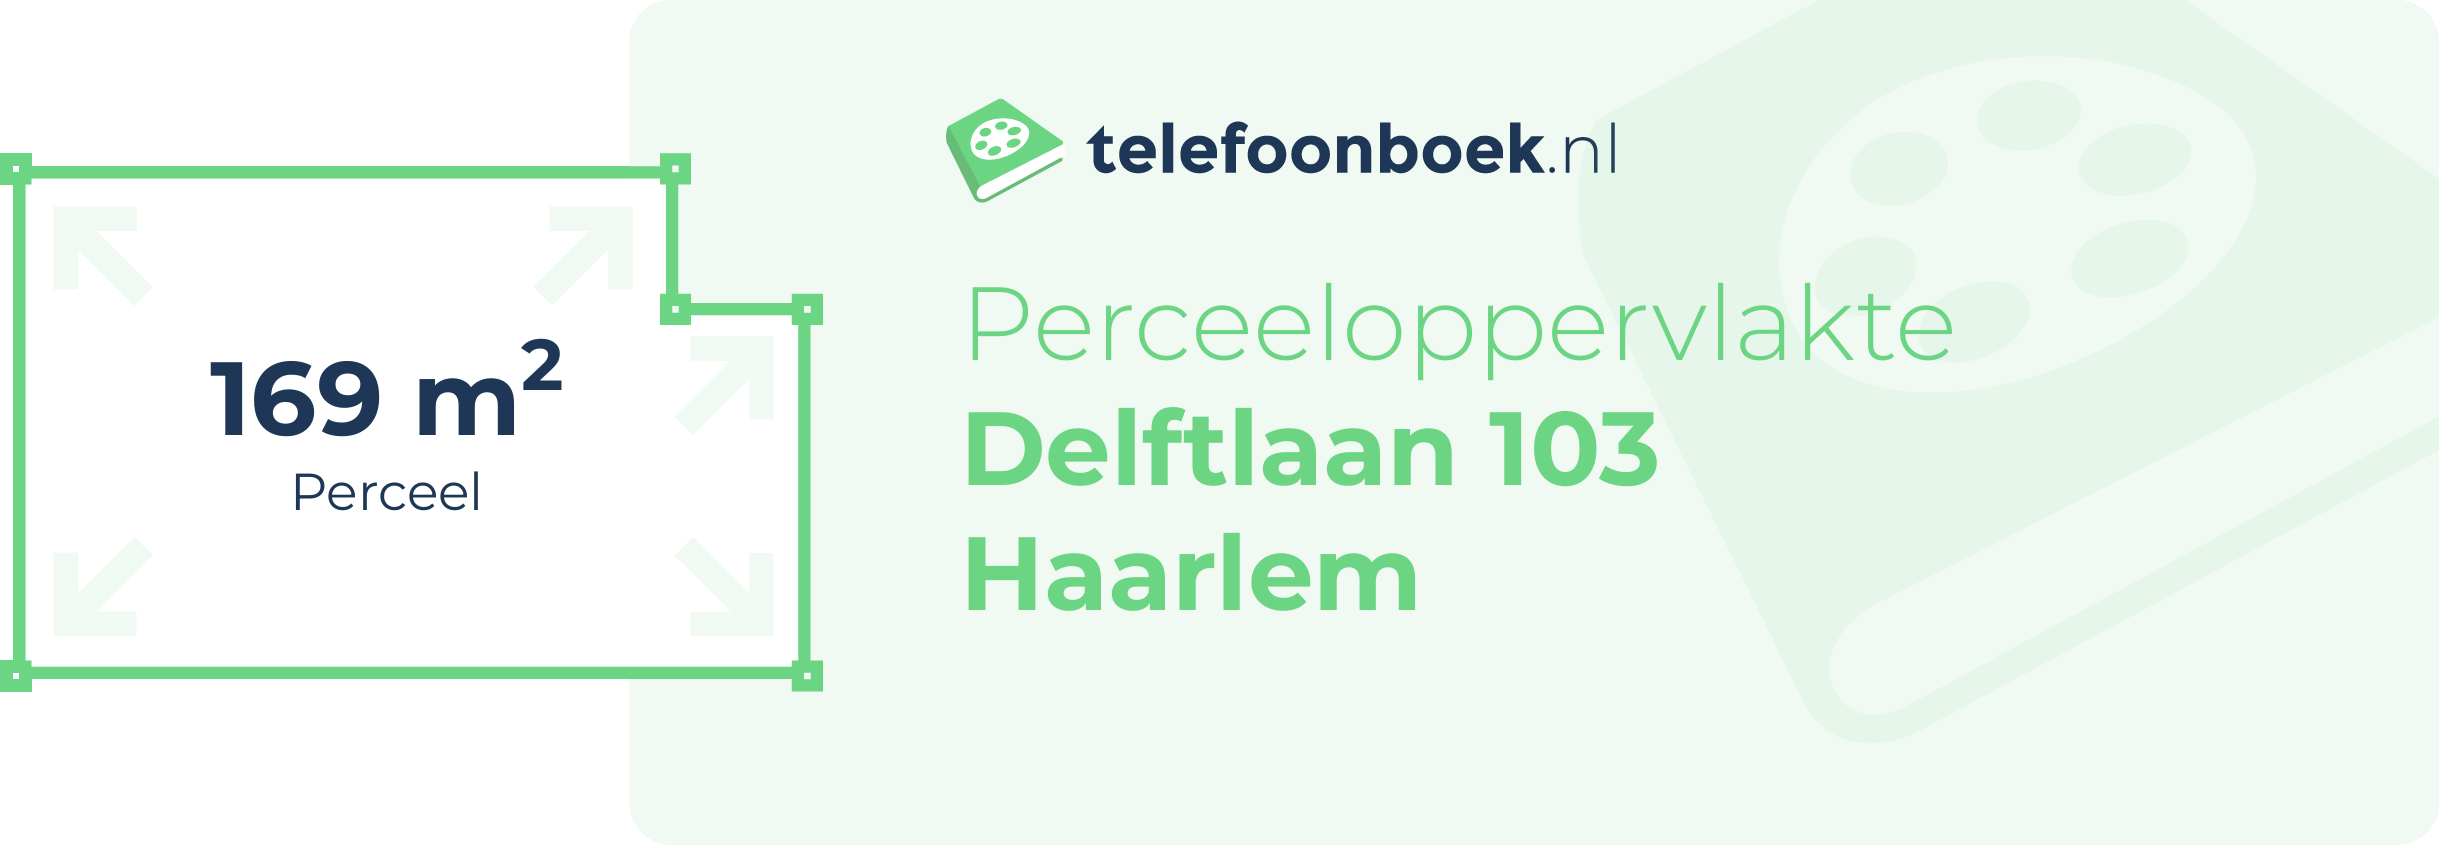 Perceeloppervlakte Delftlaan 103 Haarlem